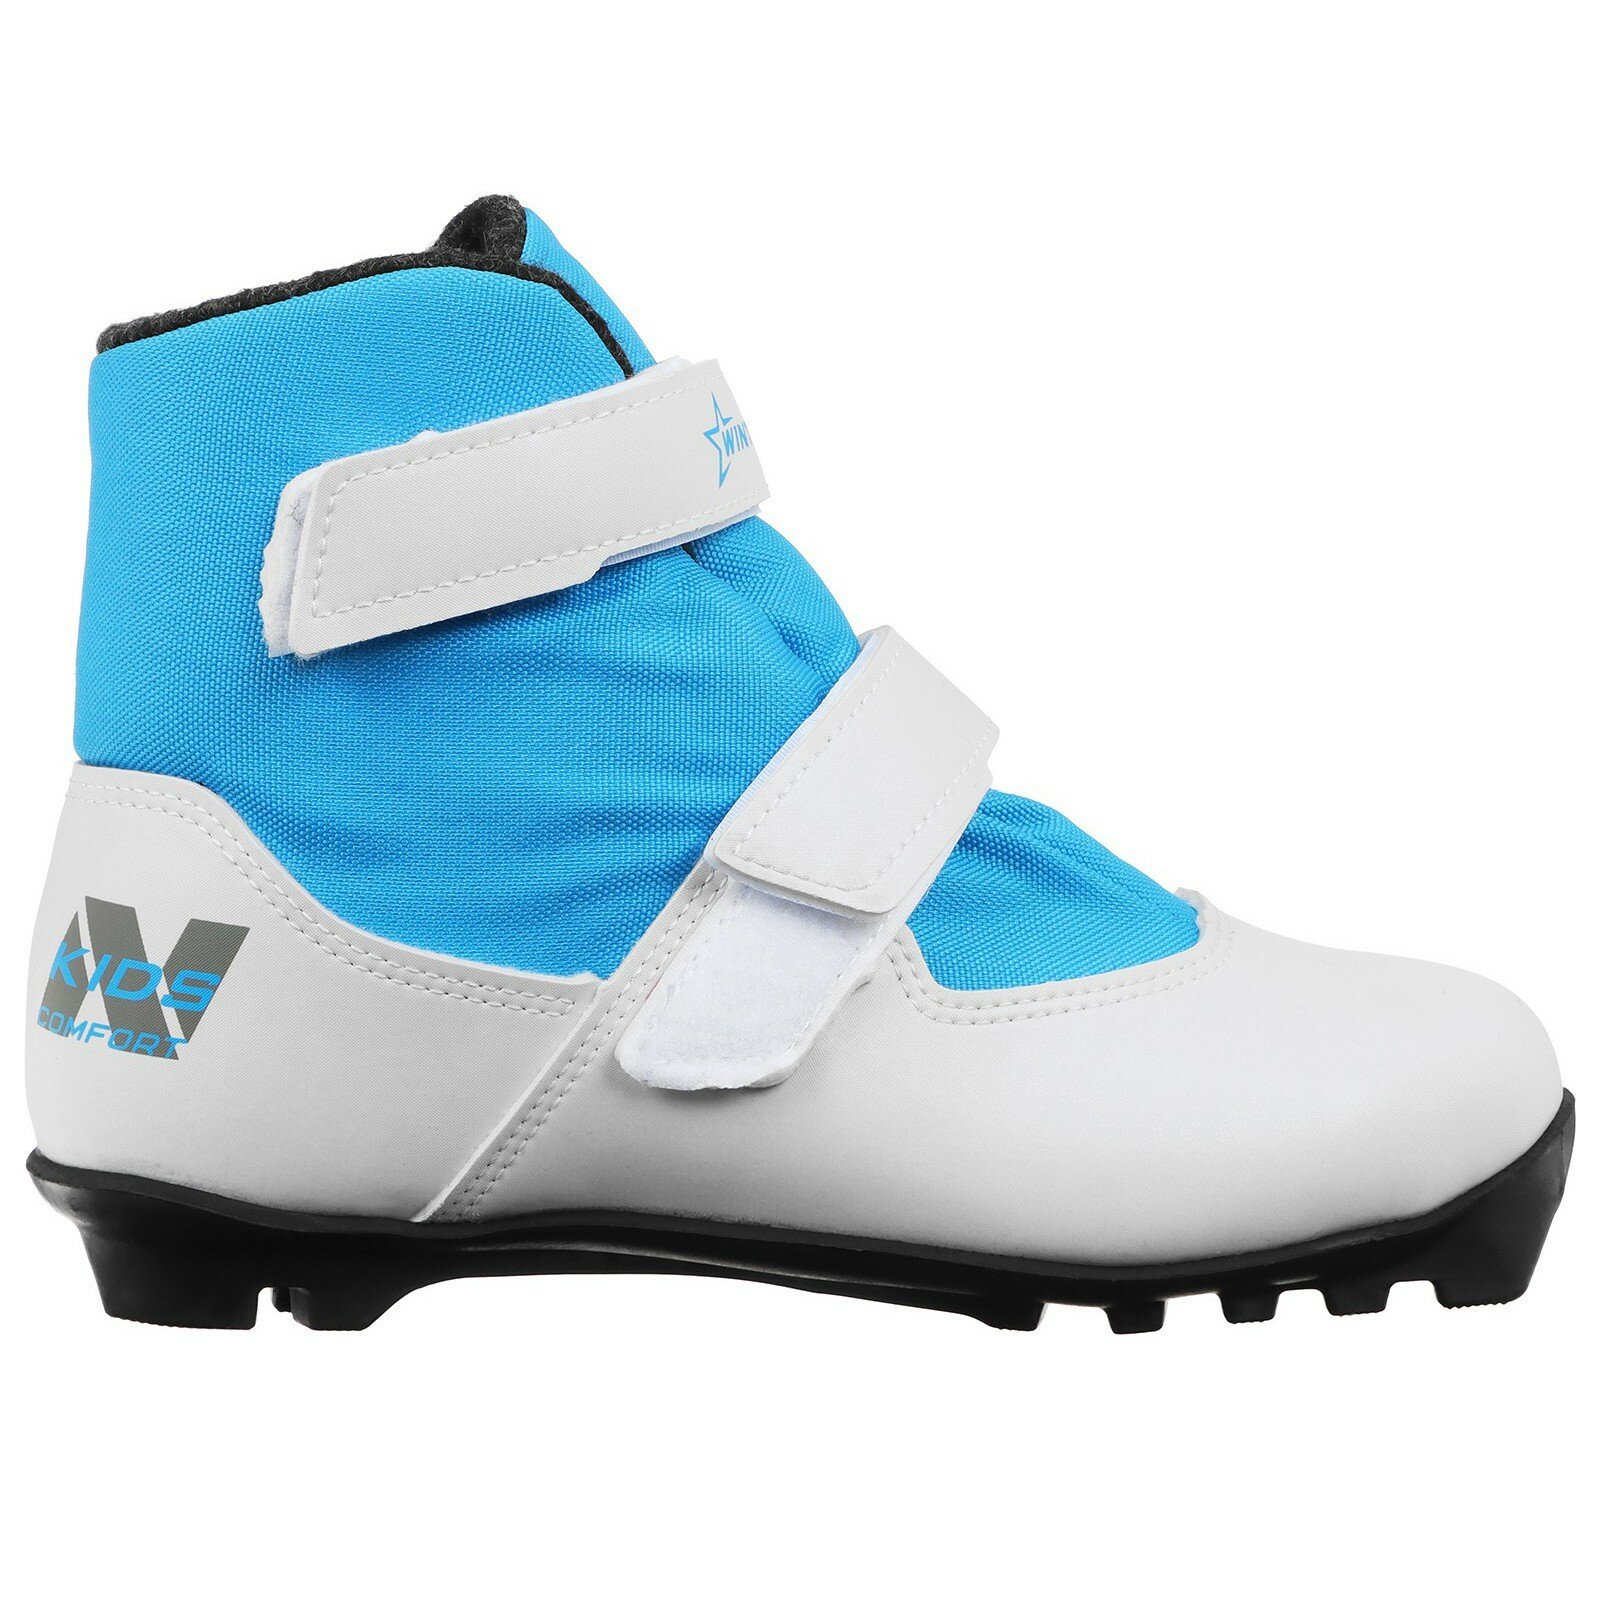 Ботинки лыжные детские Winter Star comfort kids, NNN, размер 33, цвет белый, синий